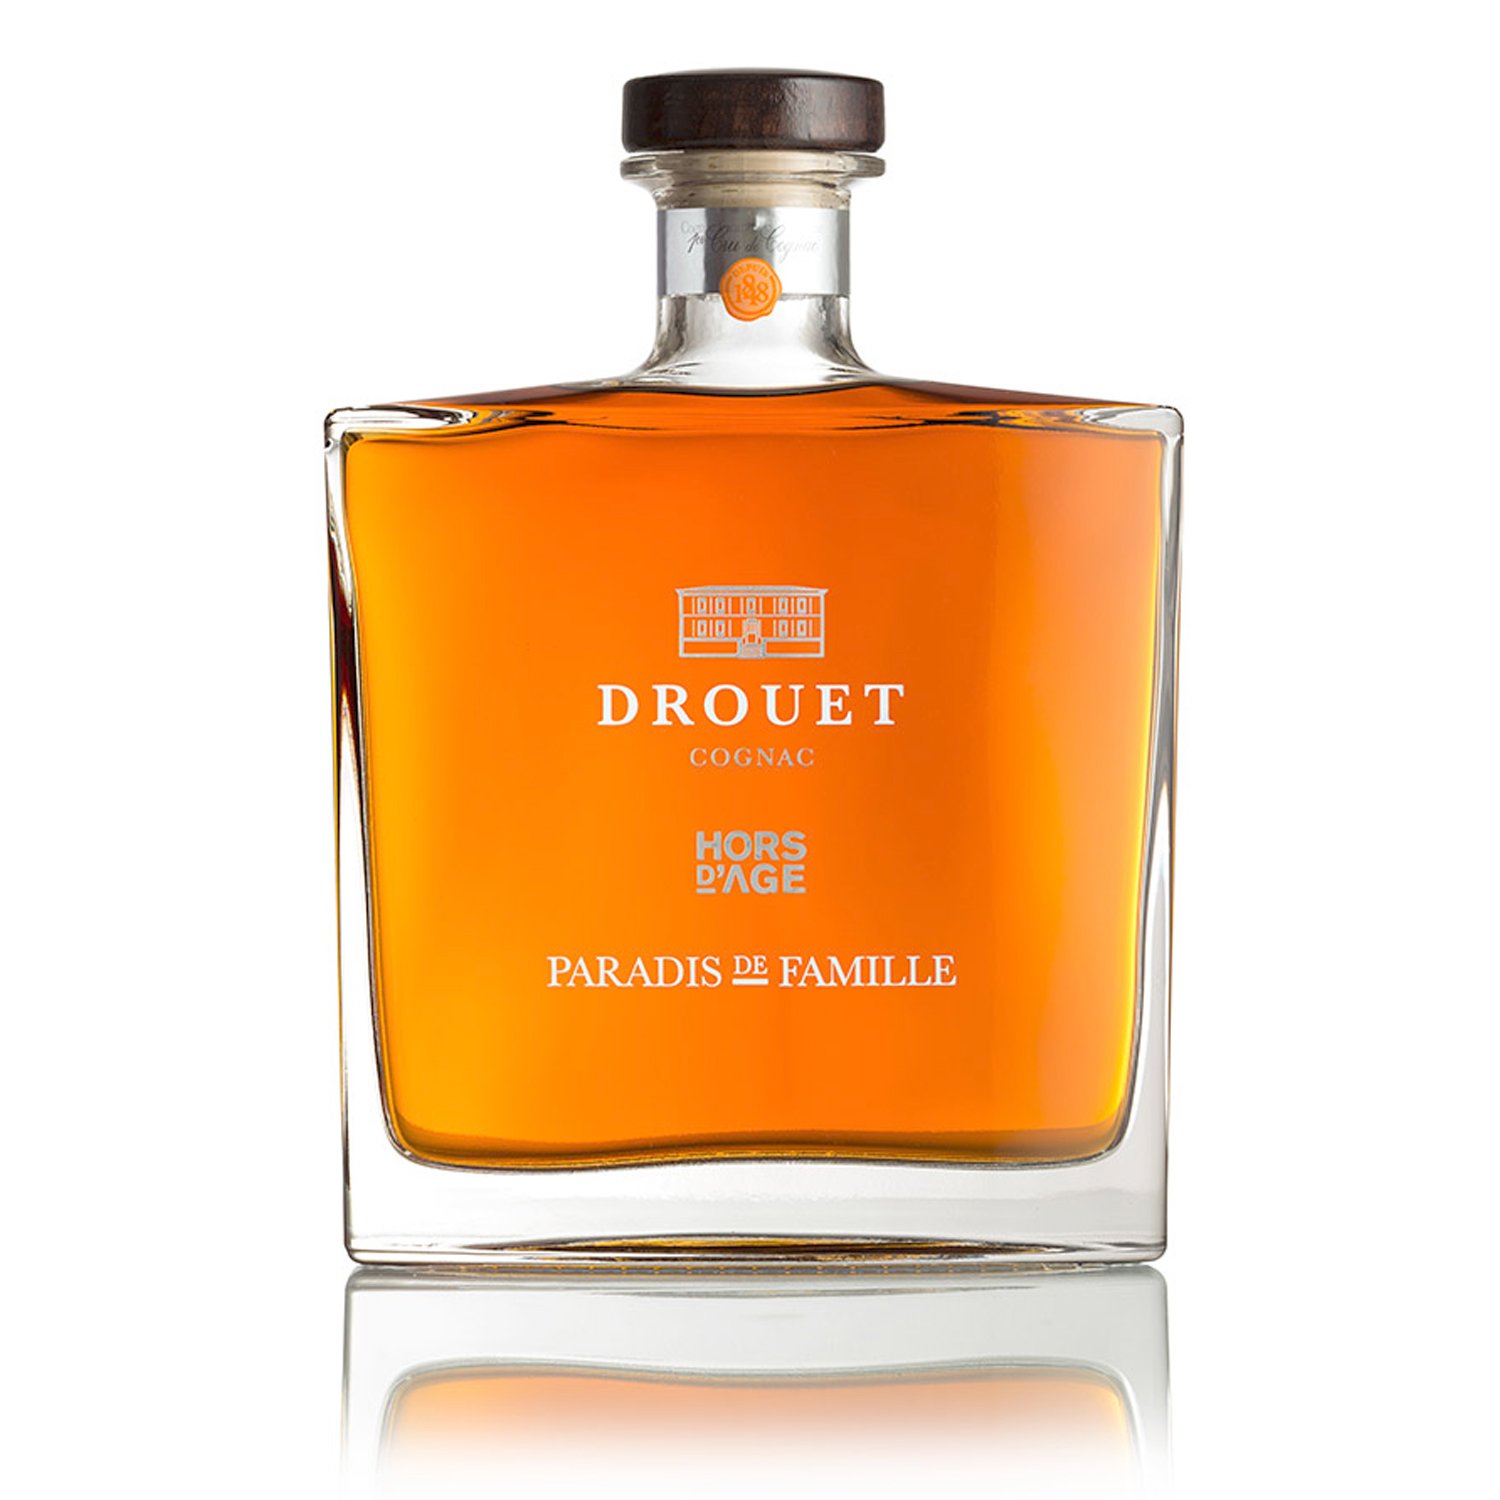 Cognac-Drouet-Hors-Age-Paradis-de-Famille-Drouet